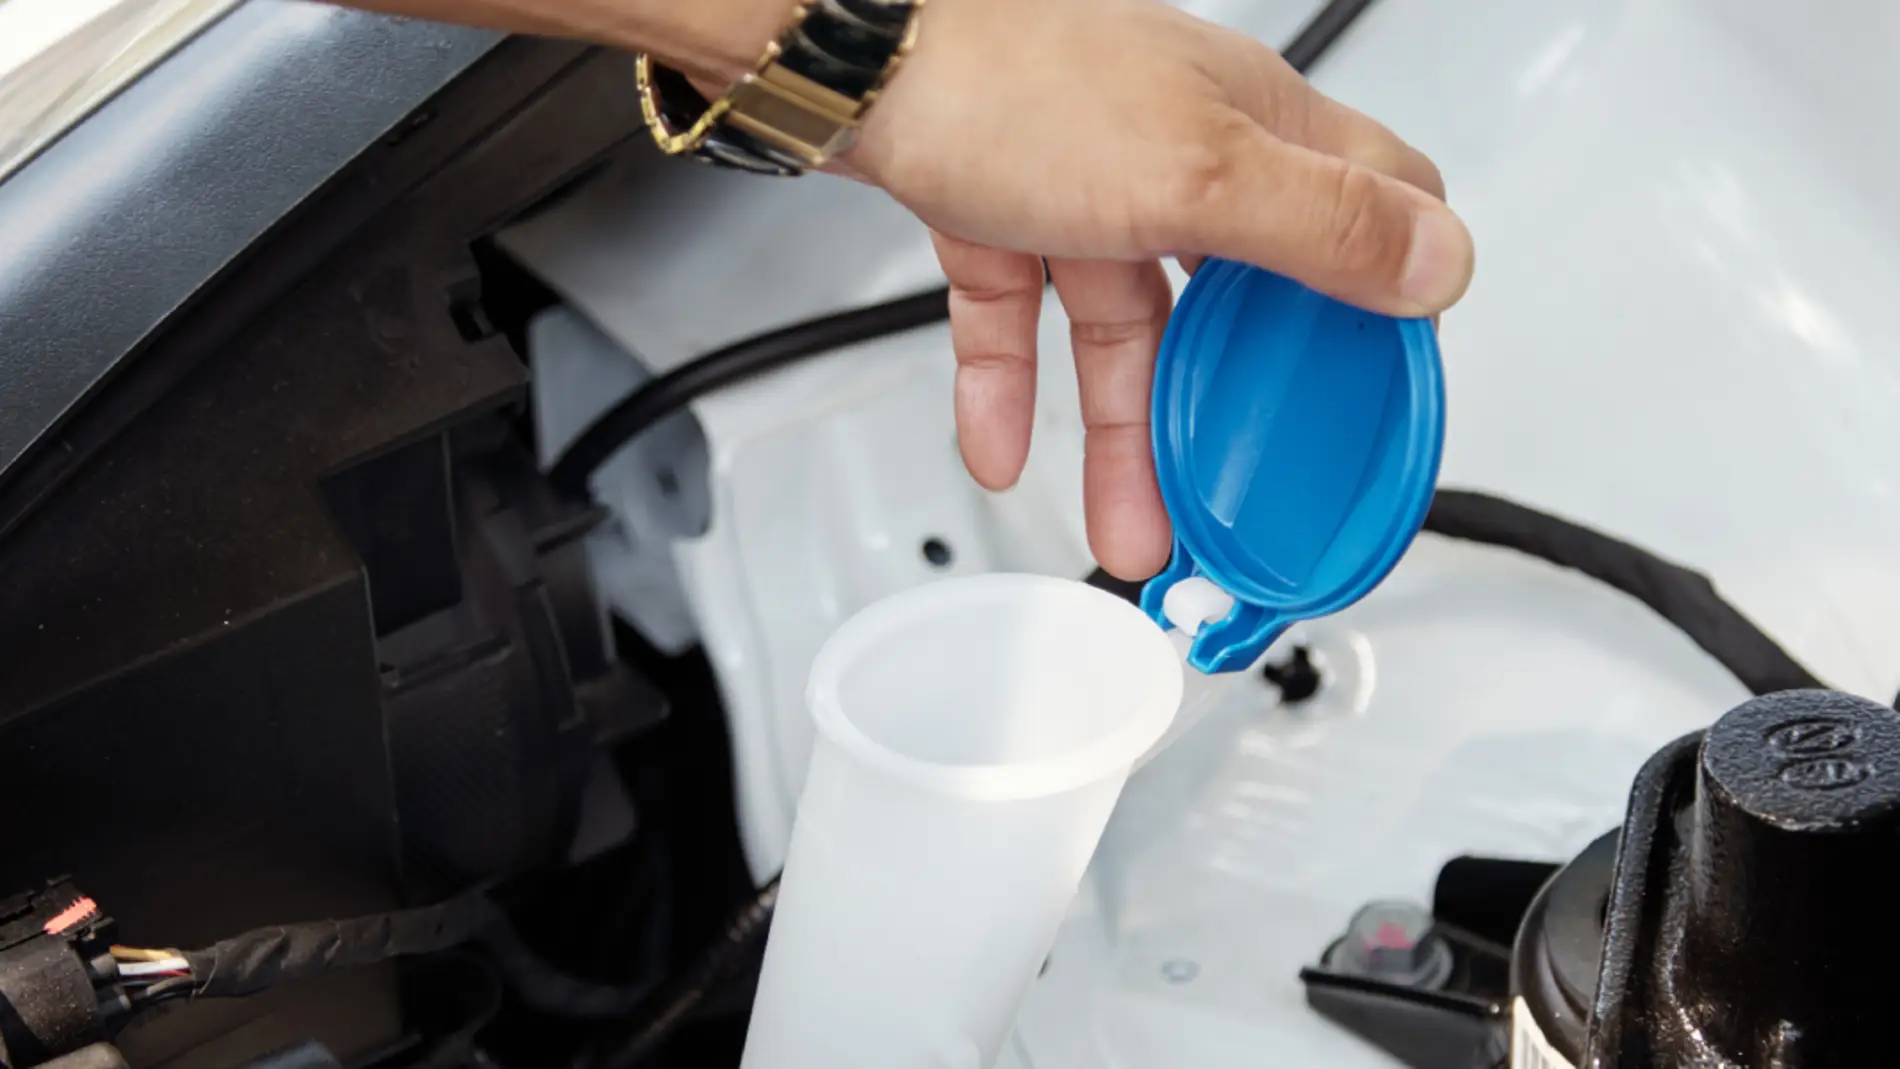 Cómo cuidar los limpiaparabrisas del coche, según la DGT